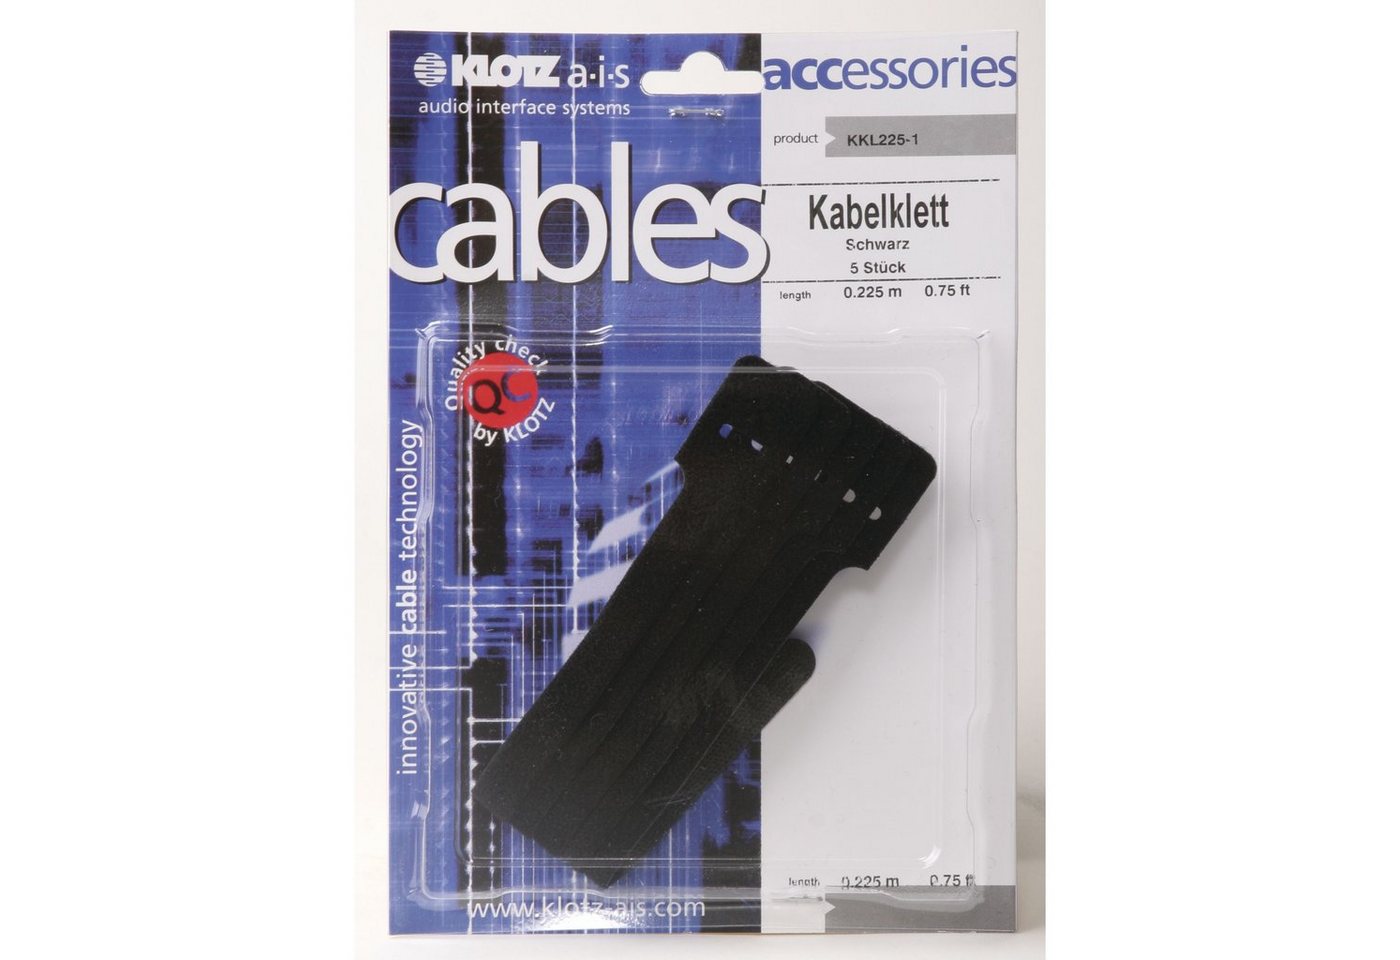 Klotz Cables Kabelzubehör, (Kabelkletten, Gaffa, etc., Kabelkletten, KKL225-1 Kabelklett Stofföse schwarz, 5 Stück - Kabelklette) von Klotz Cables